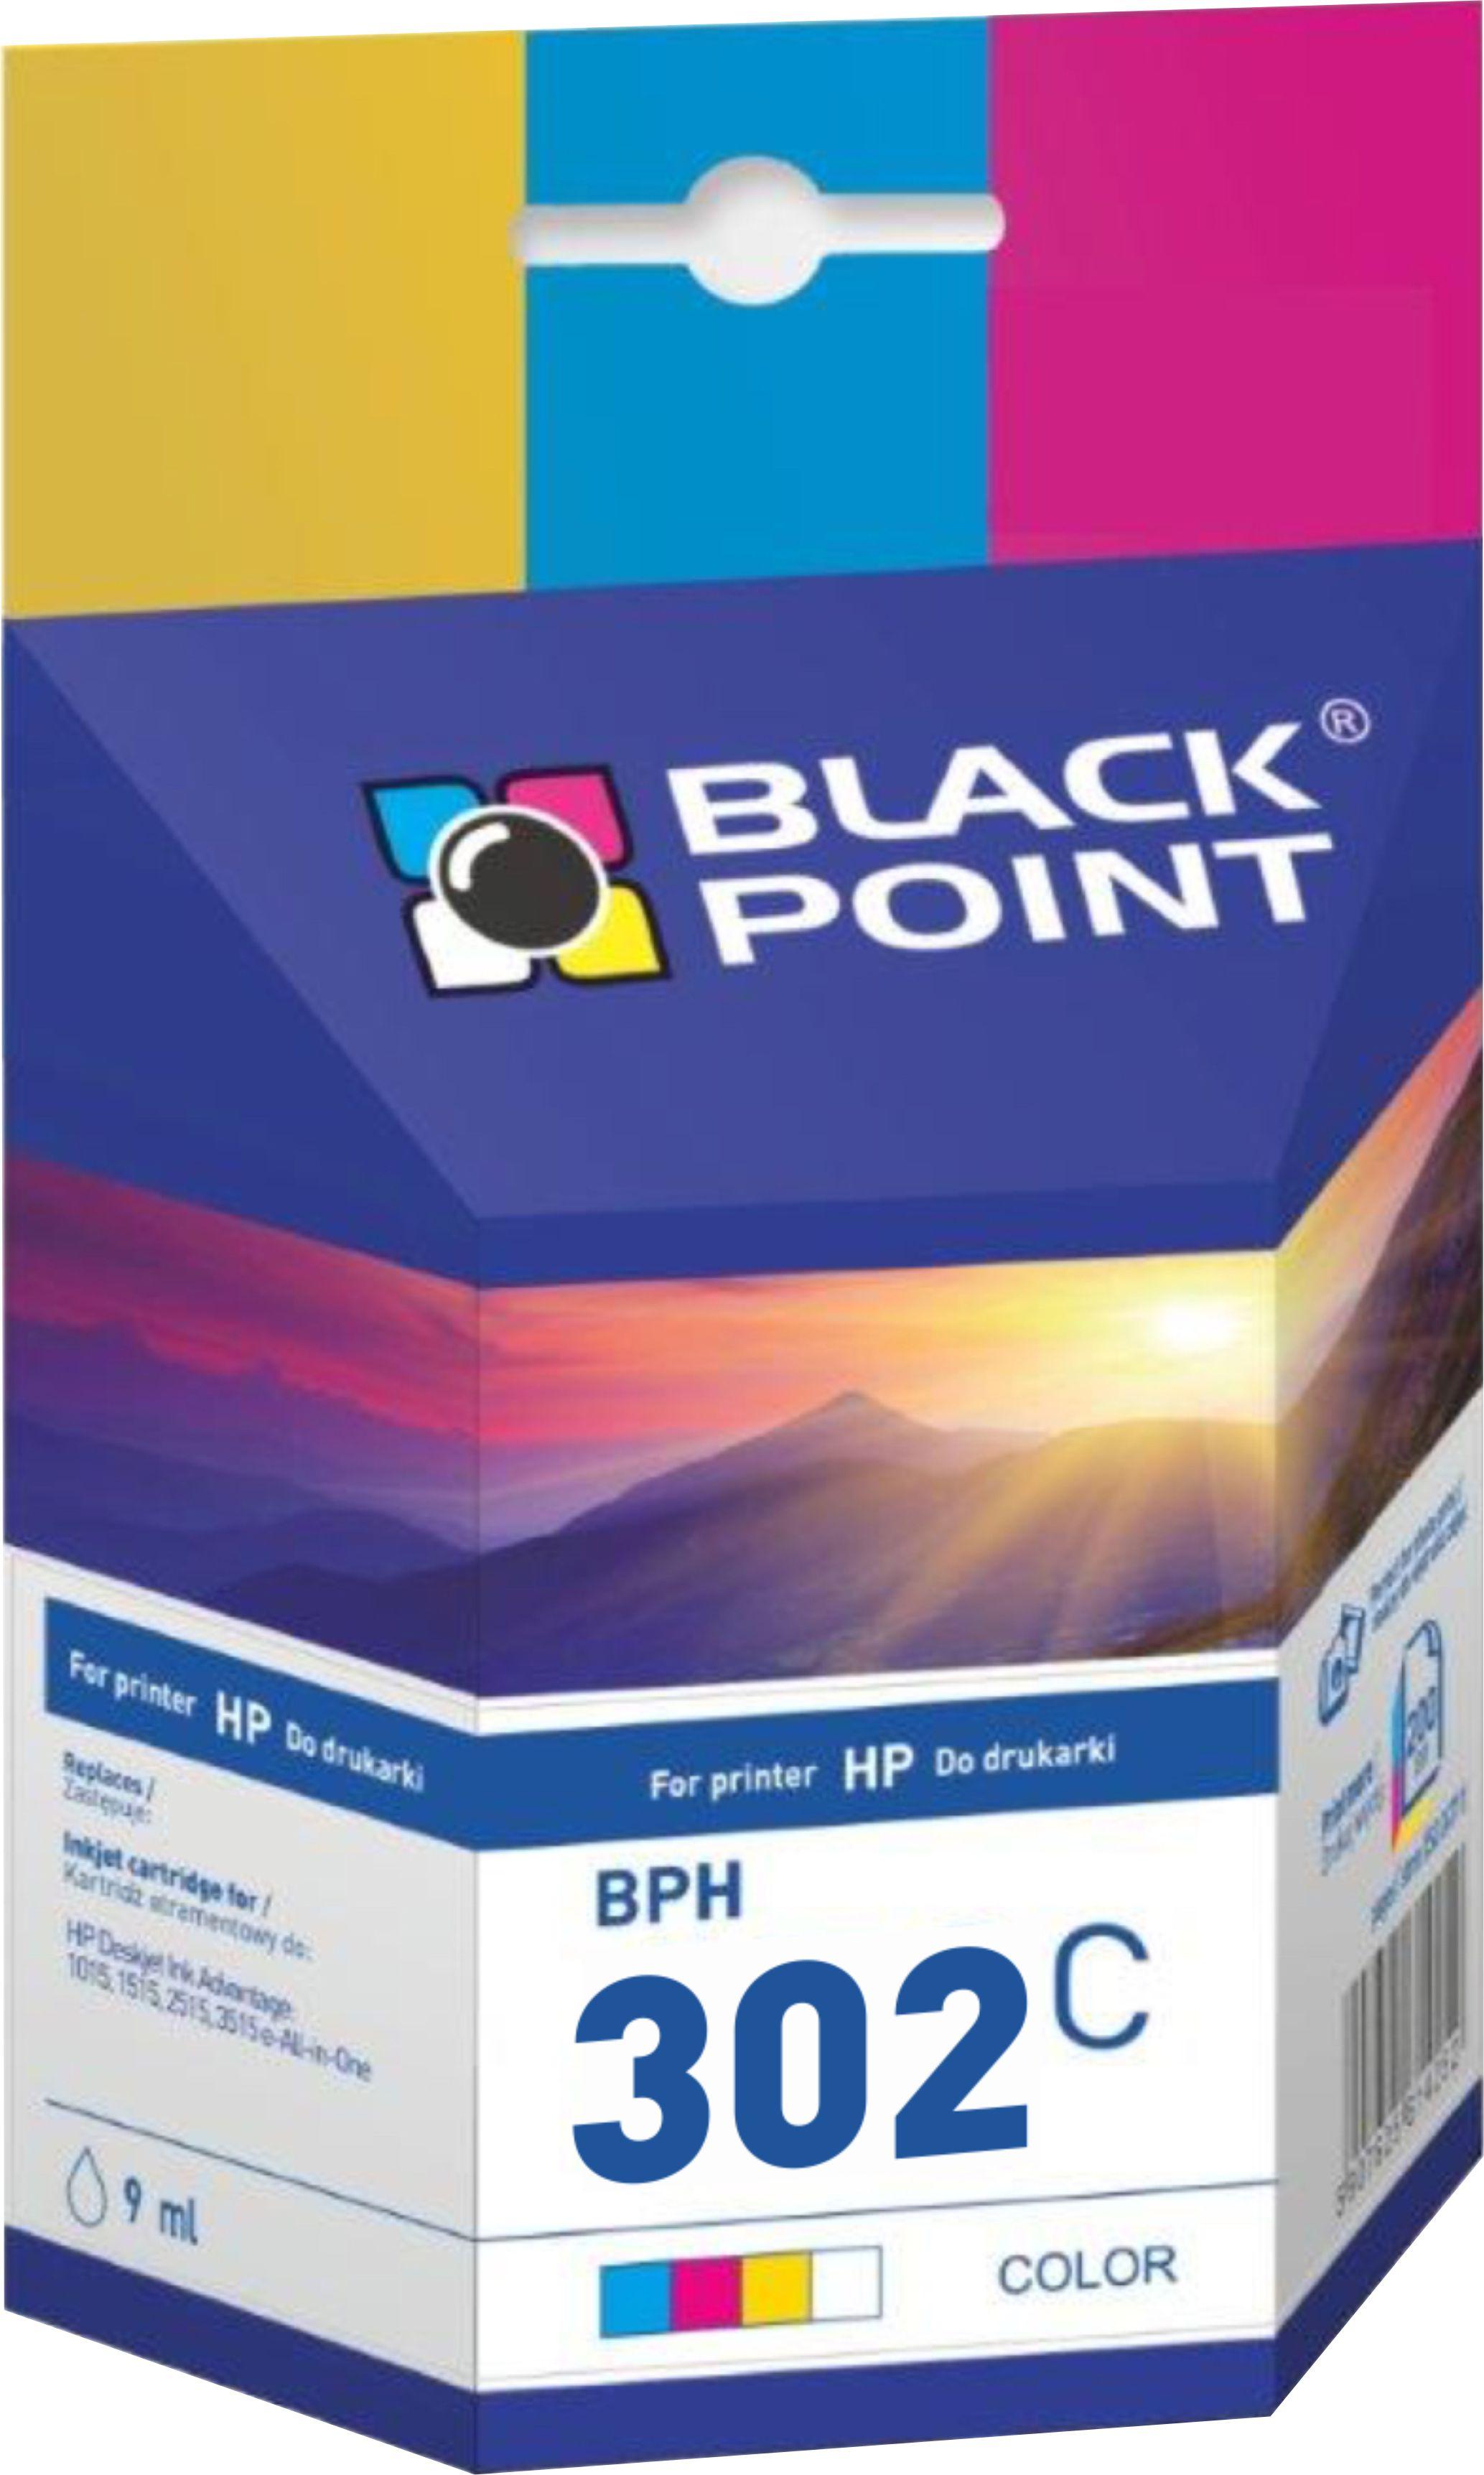 CMYK - Black Point tusz BPH302C zastpuje HP F6U65AE, trjkolorowy